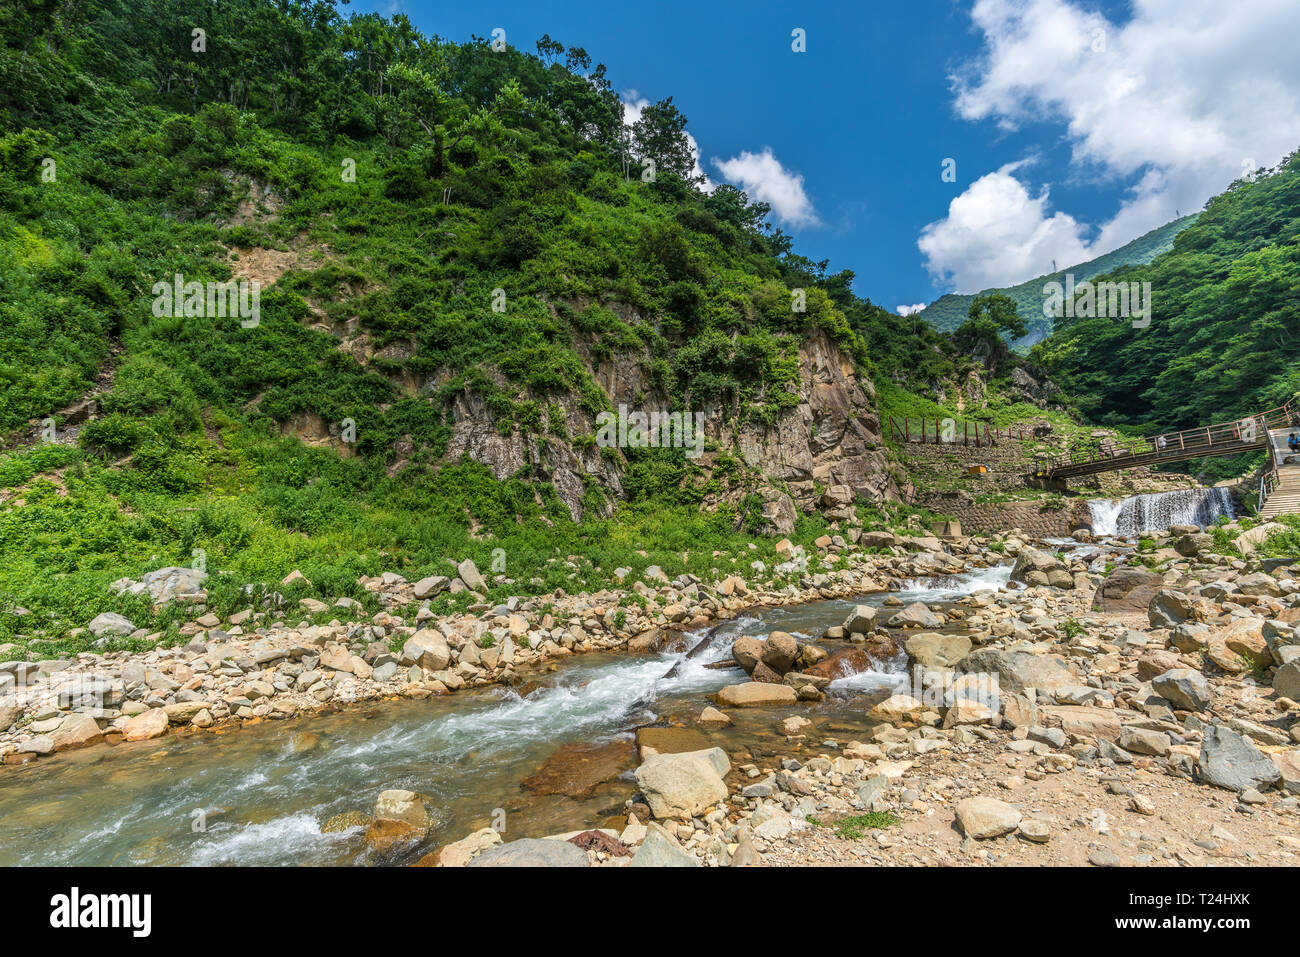 Yokoyu River (Yokoyugawa) in Jigokudani valey. Nagano Prefecture, Japan Stock Photo